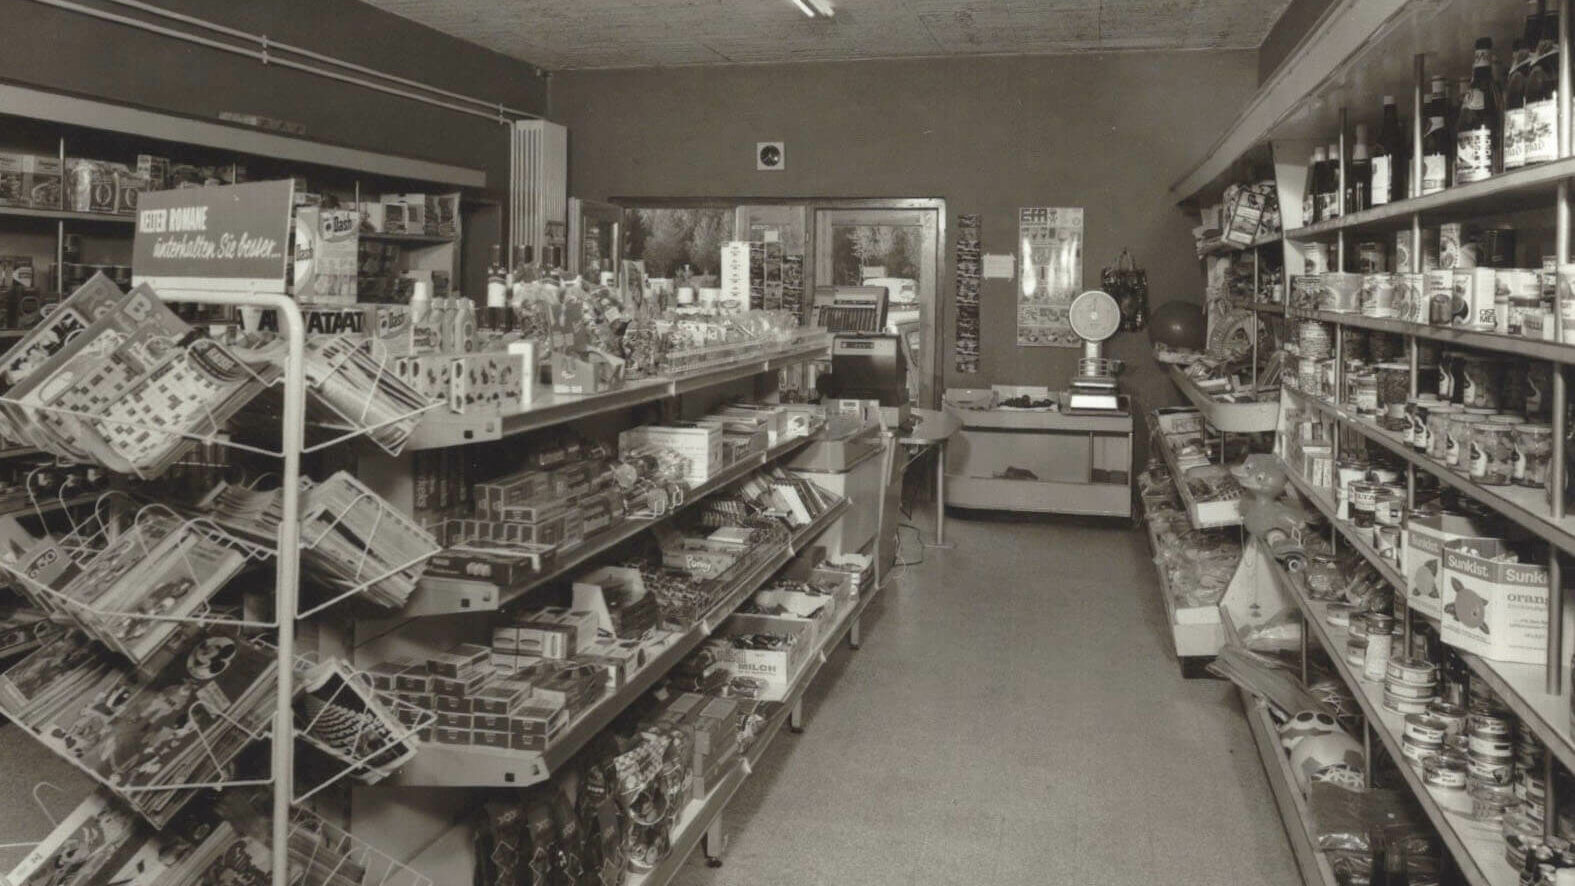 schwarz-weiß Fotografie eines alten Supermarkts von innen